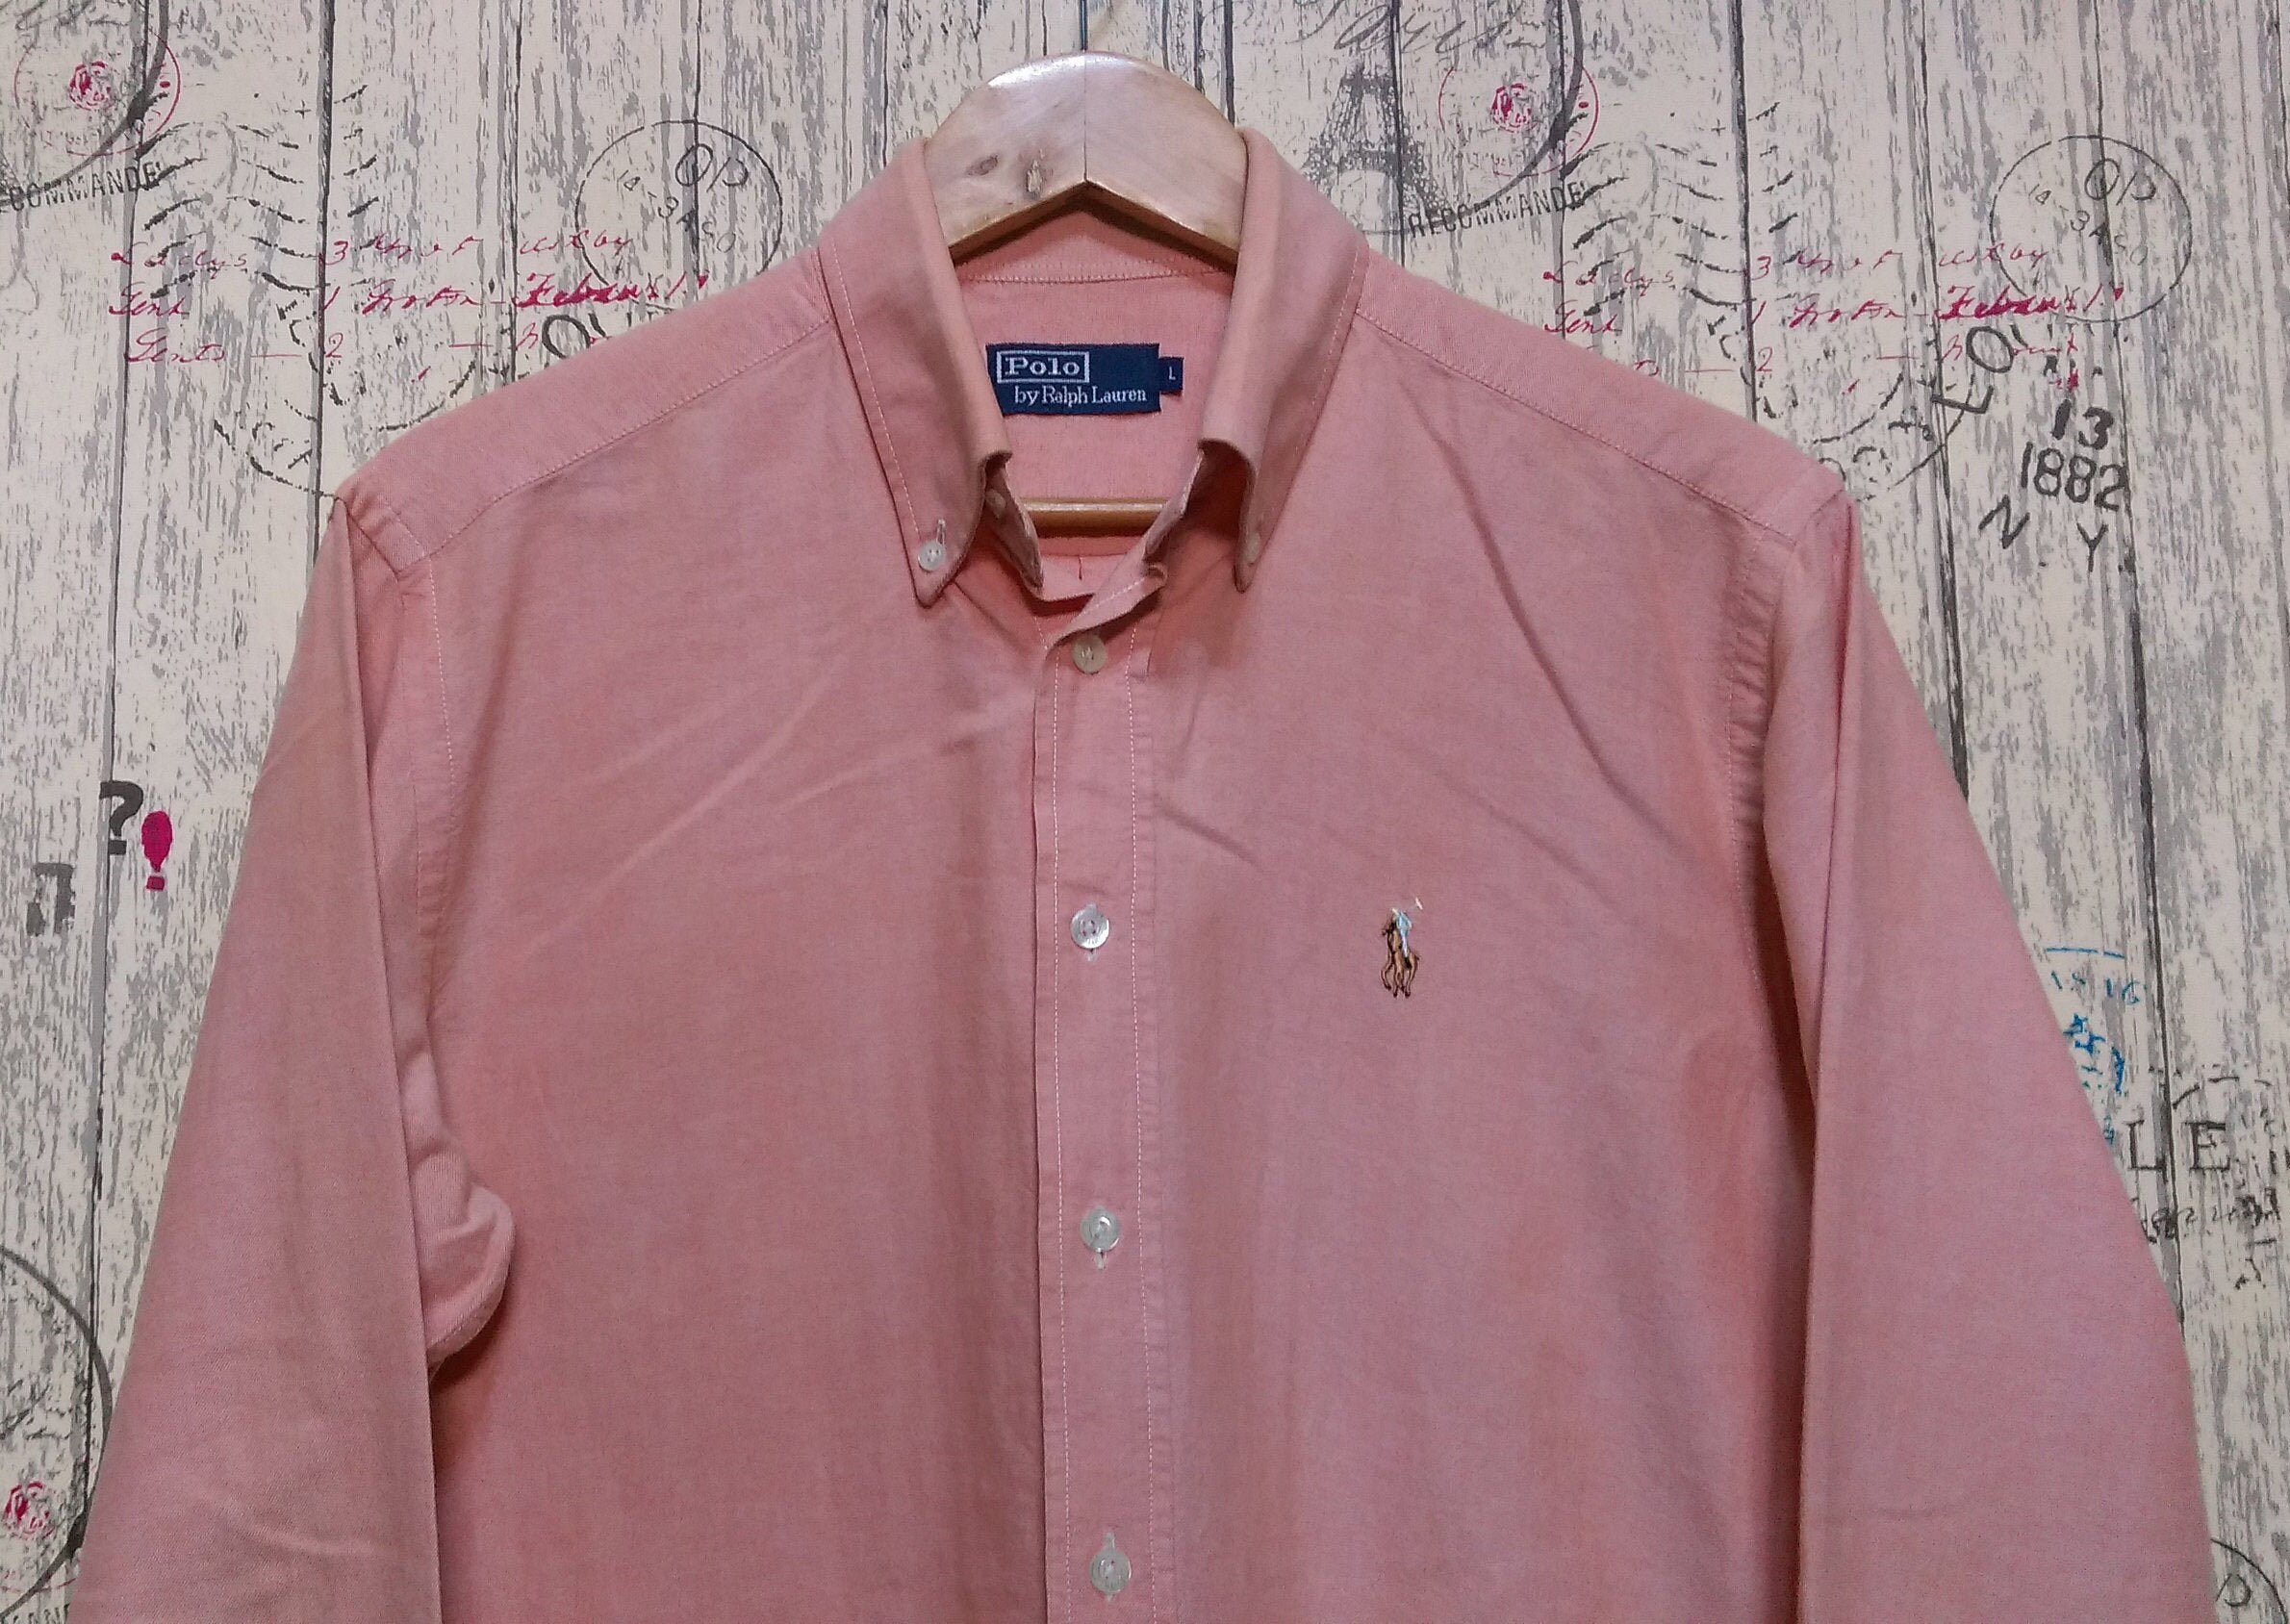 Vintage Polo Ralph Lauren blouse shirt Men's / Ralph | Etsy